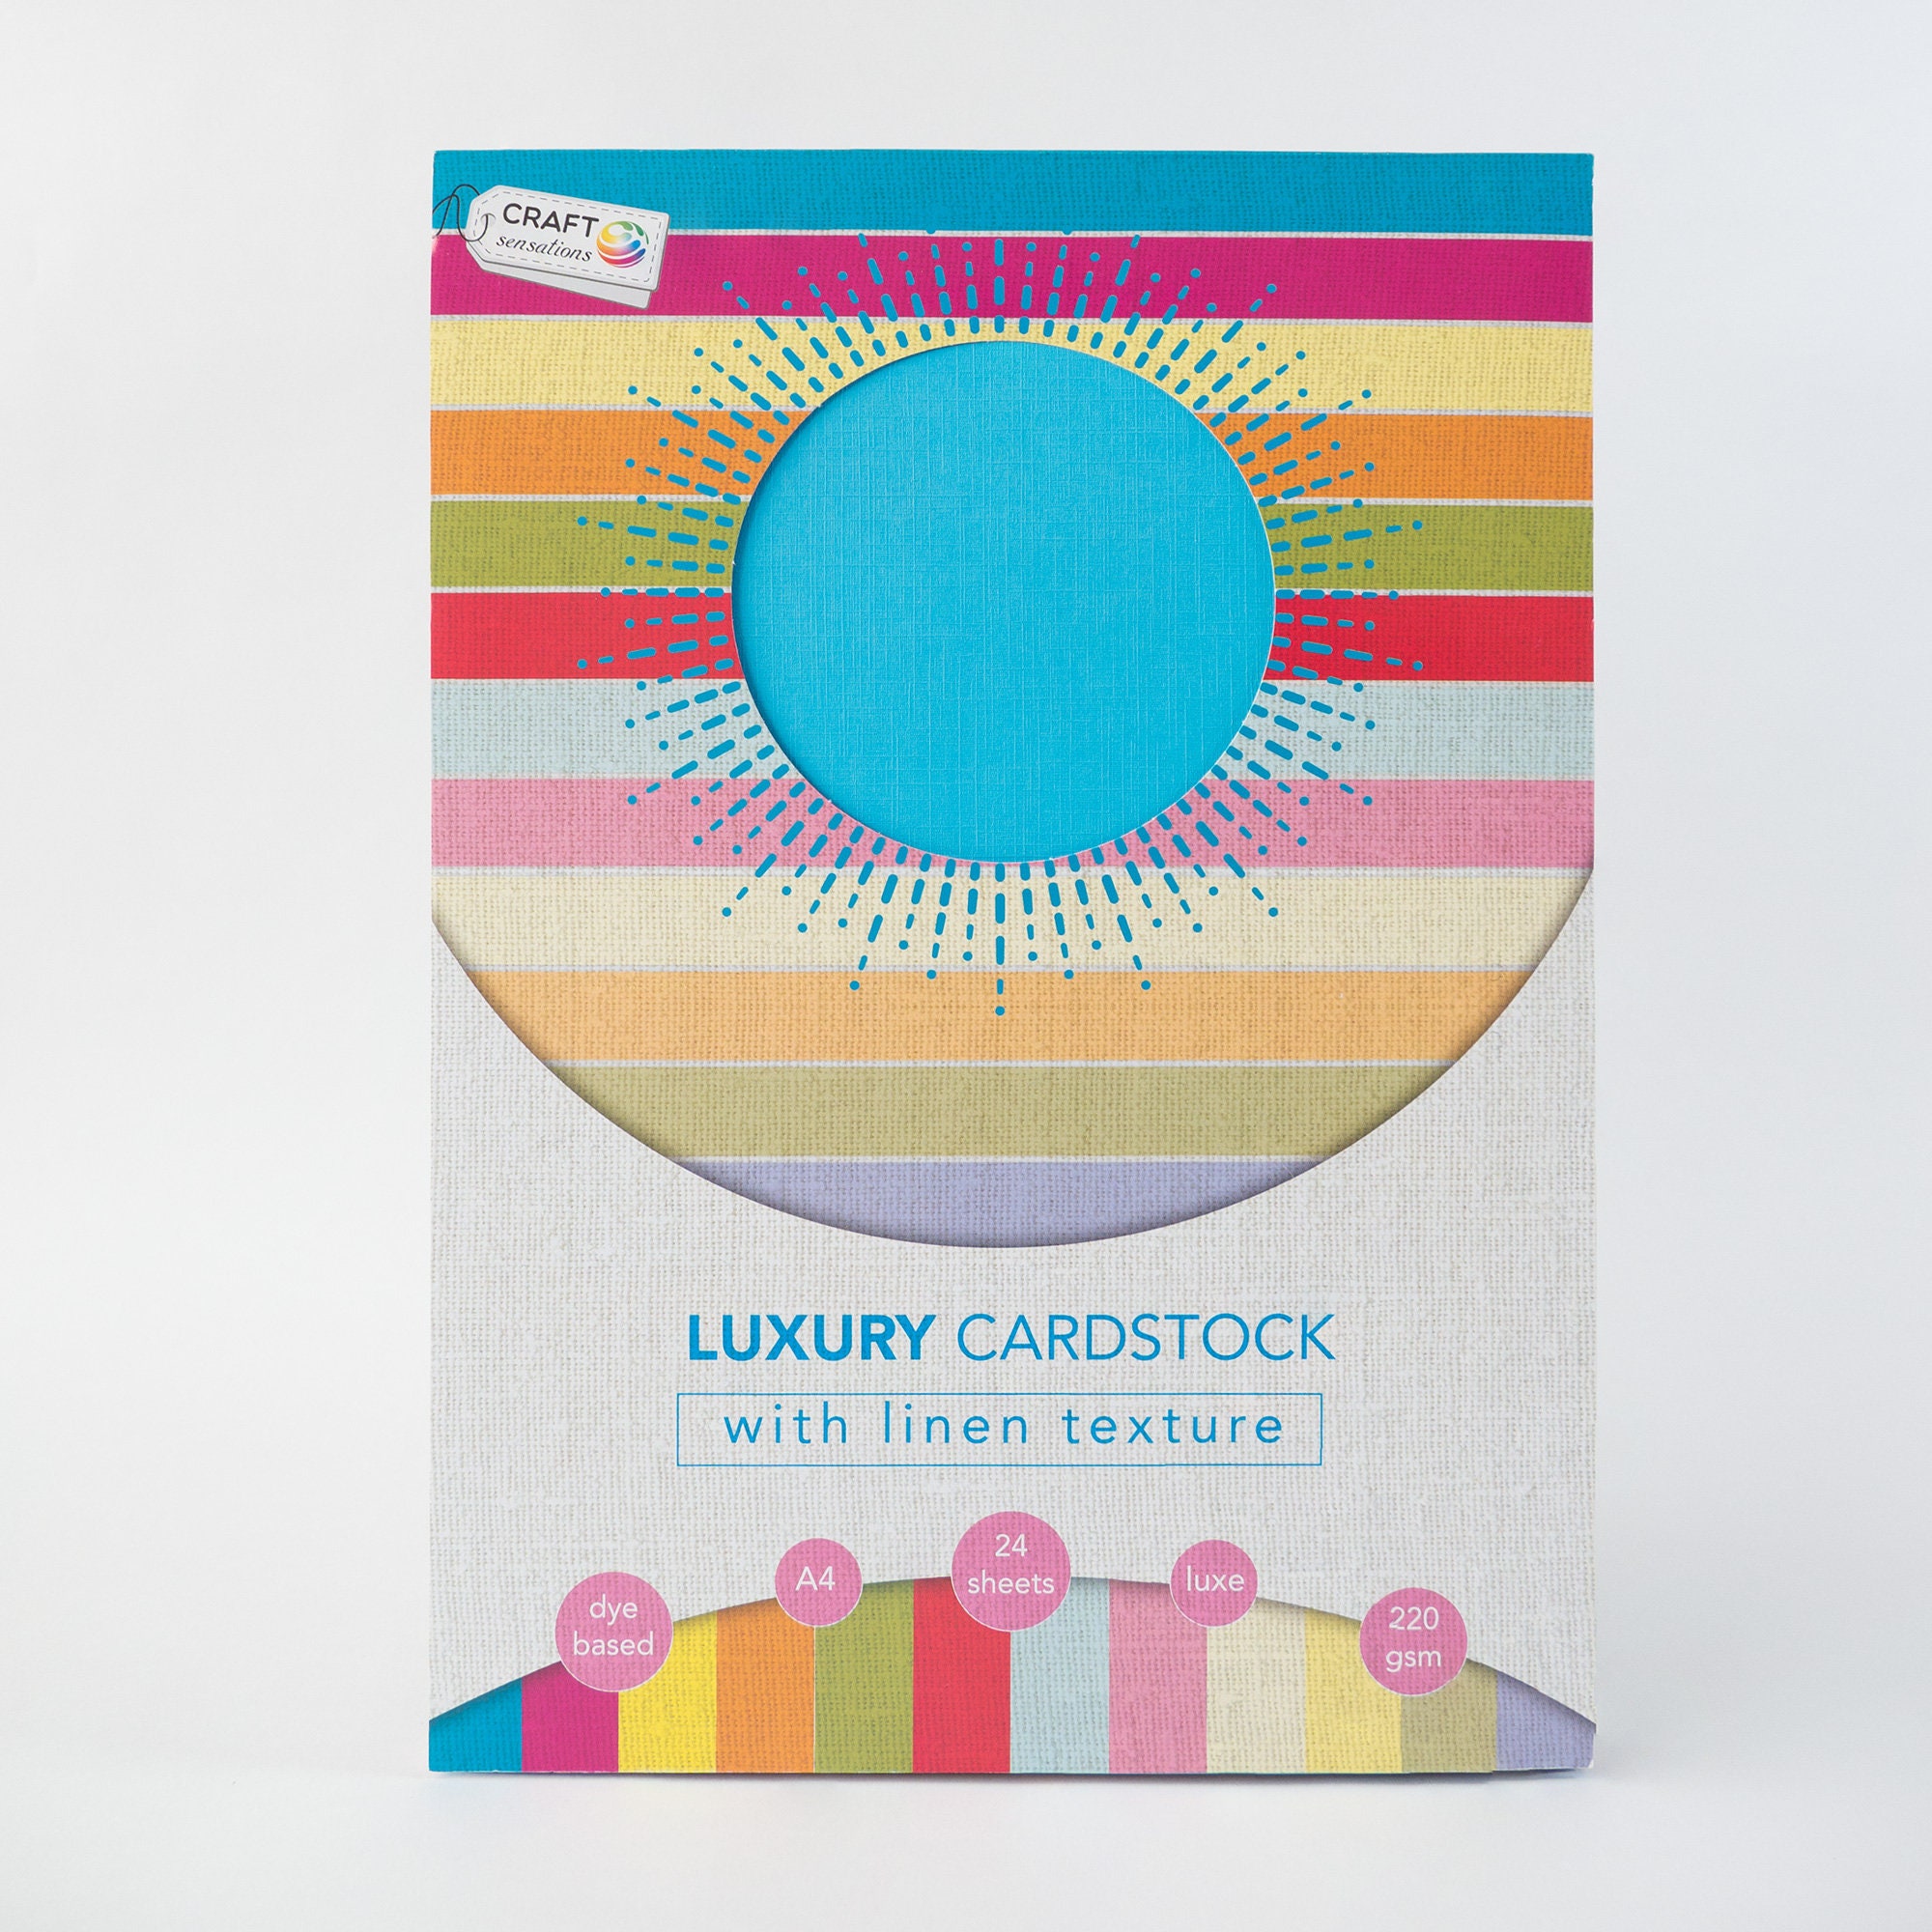 Cardstock Craft Supplies, Scrapbooking Paper, Crayola.com